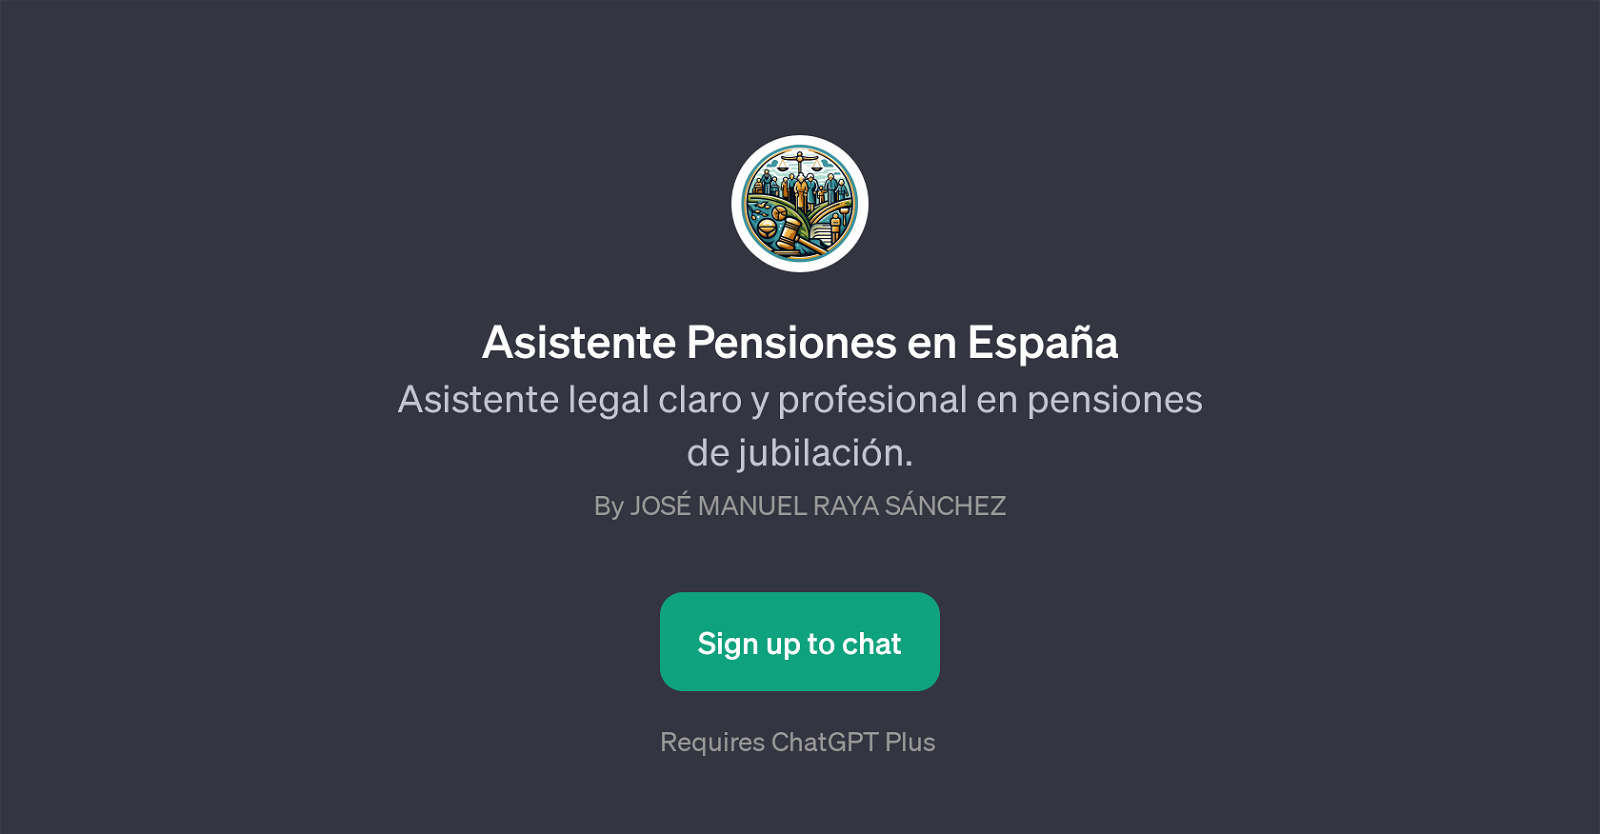 Asistente Pensiones en Espaa website